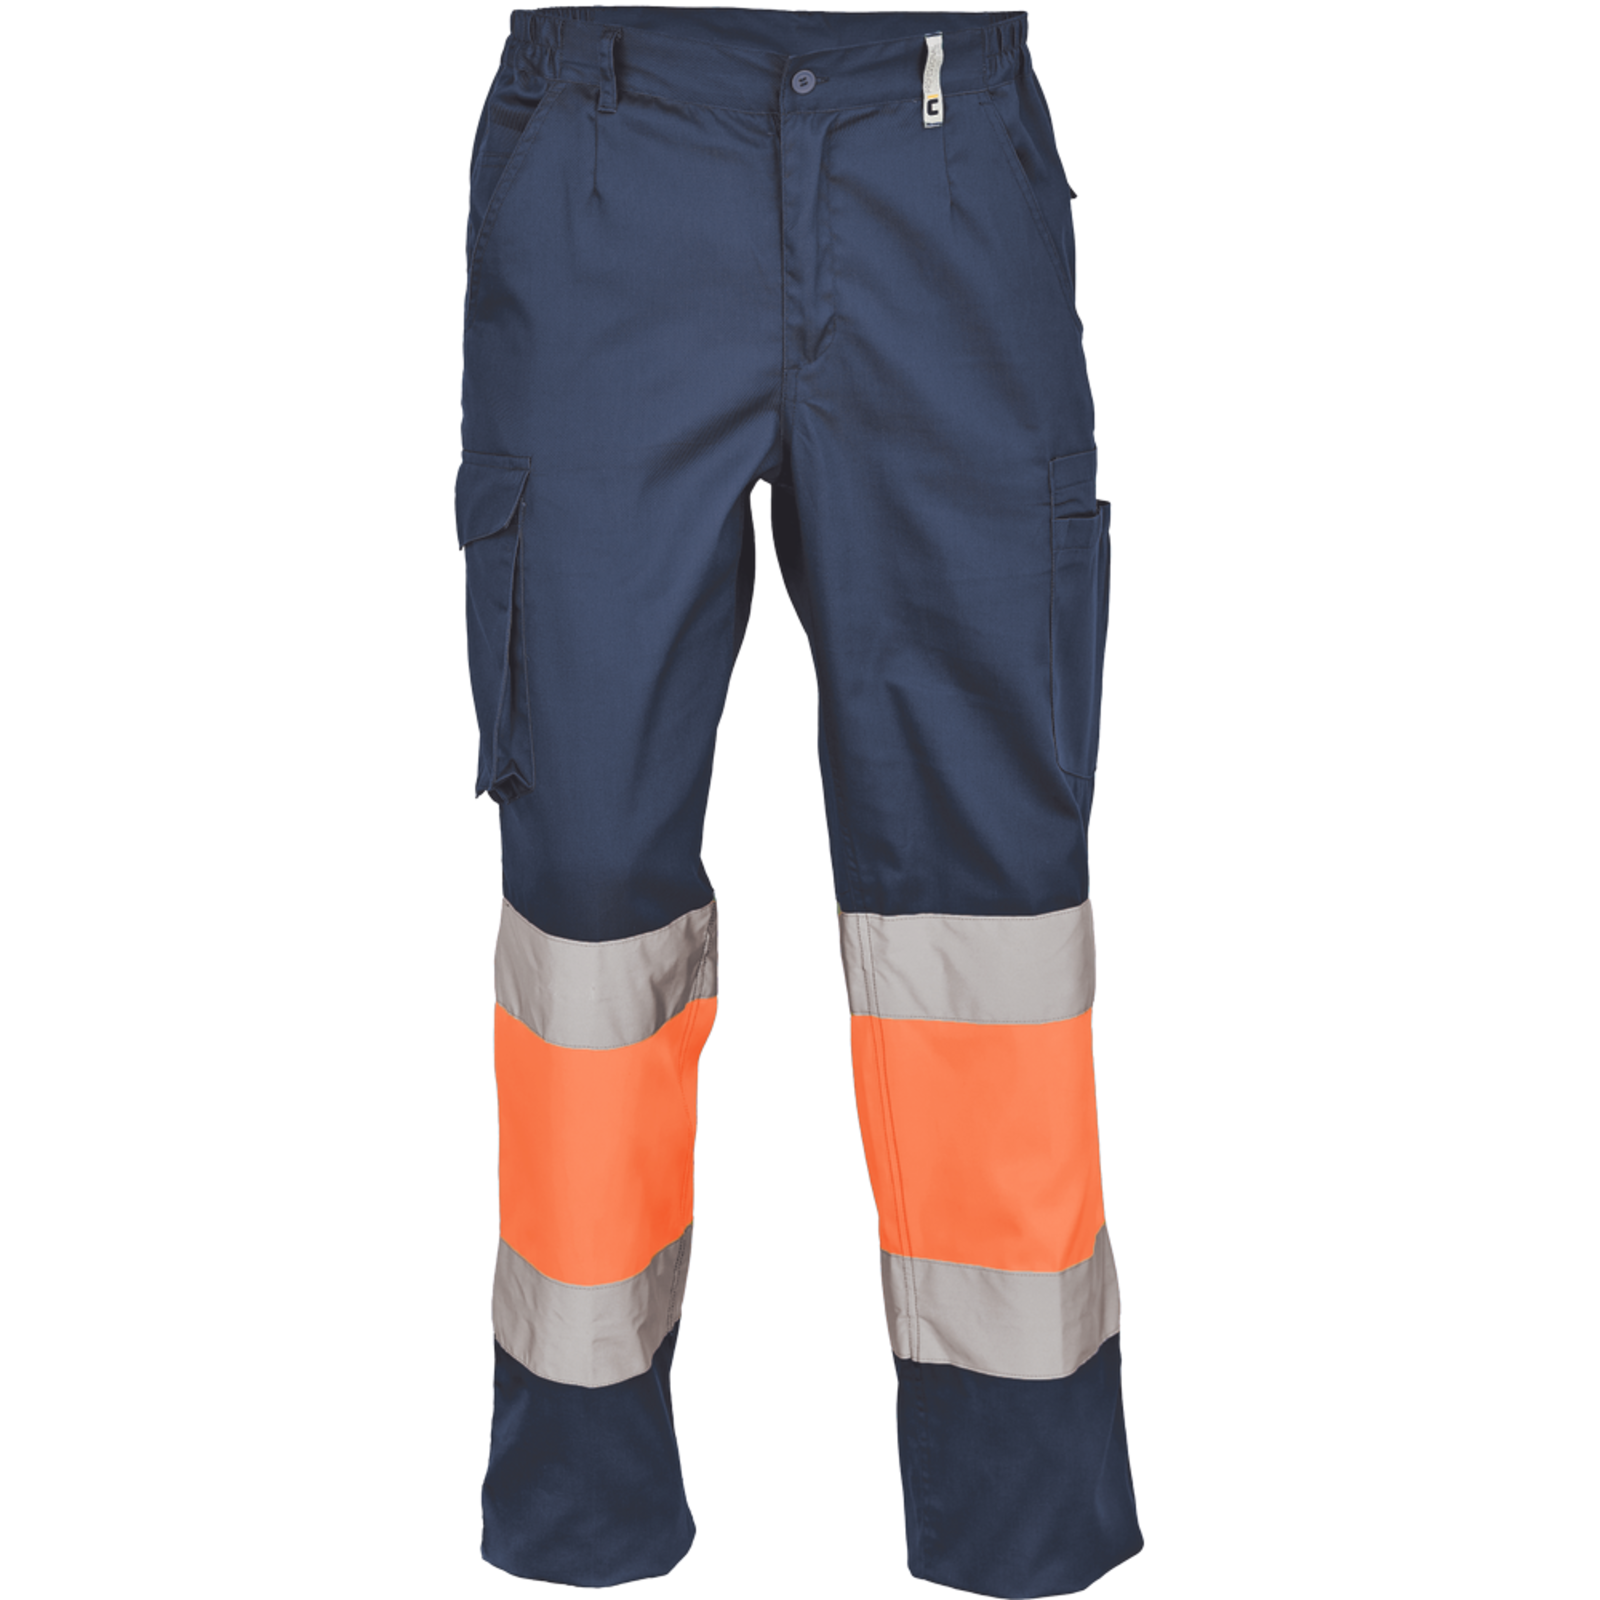 Pracovné reflexné nohavice Cerva Ciudades Bilbao HV - veľkosť: 50, farba: nám. modrá/oranžová